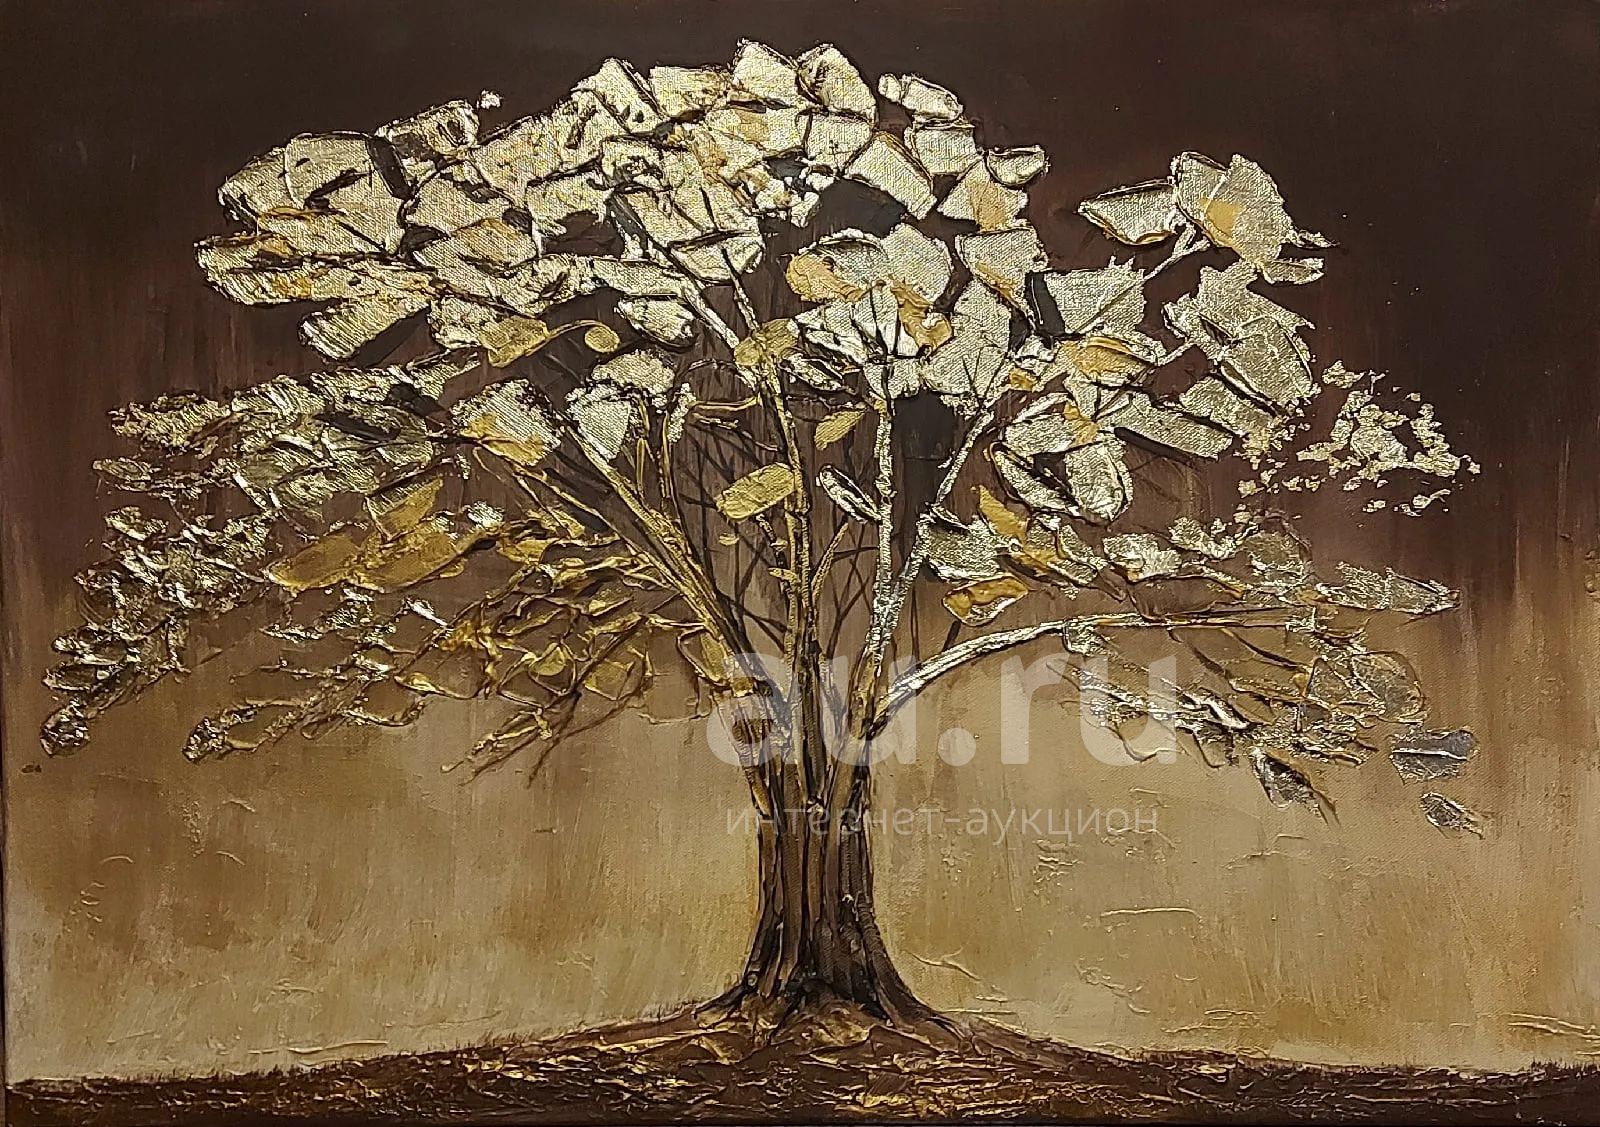 Золотое дерево живопись. Дерево с сусальным золотом живопись. Дерево с золотыми листьями картина. Картины с золотой поталью. Закат золотит деревья старинной позолотой